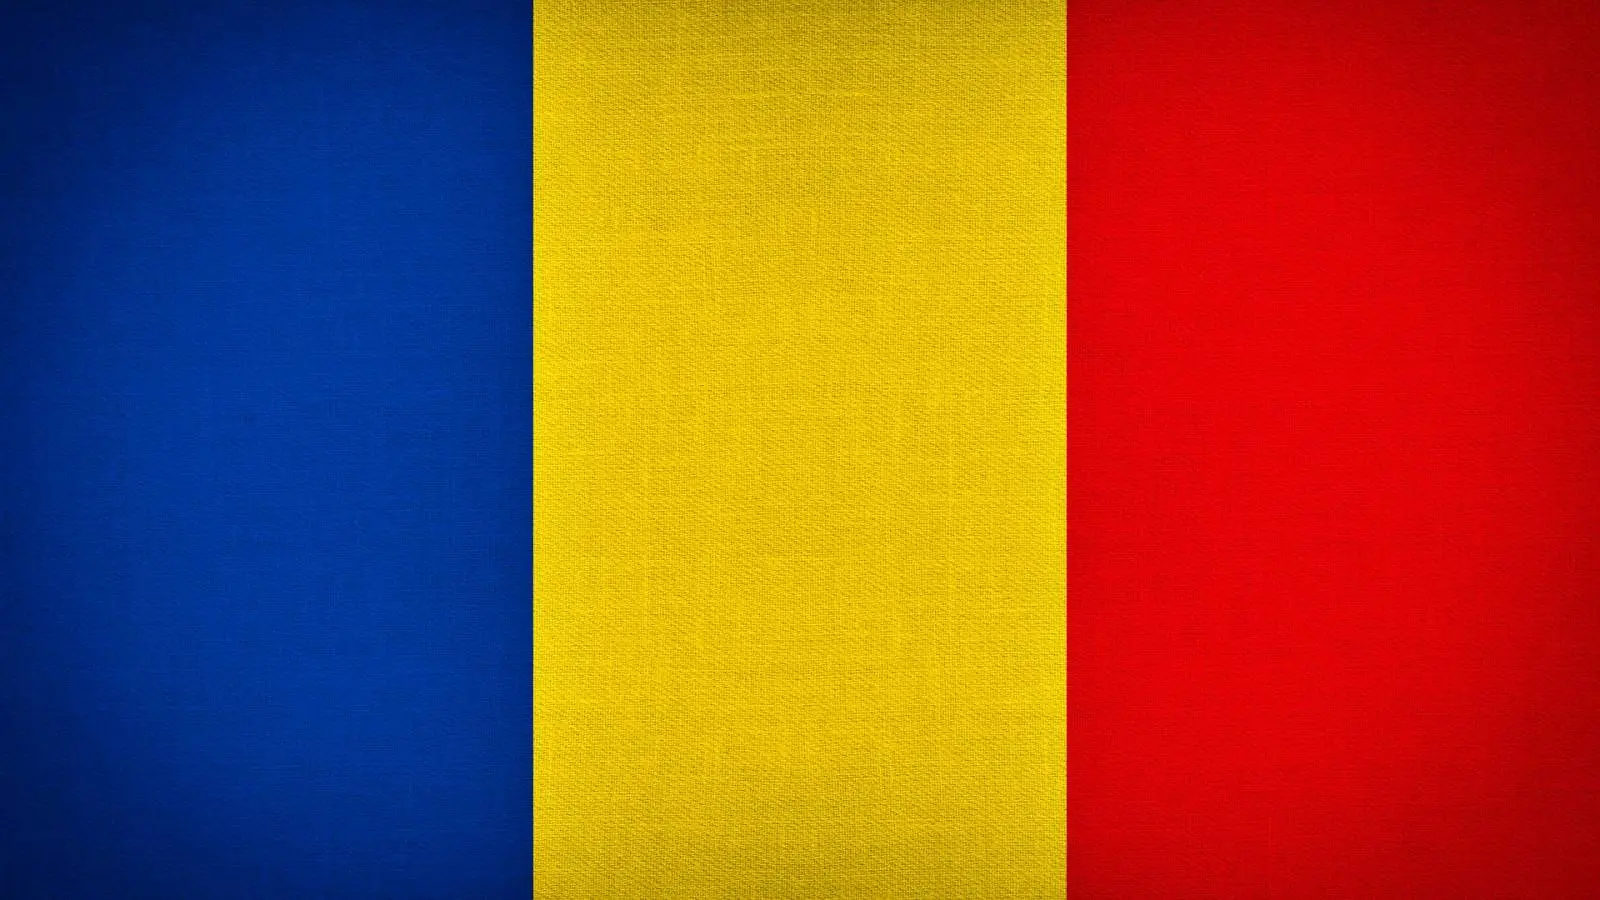 MApN-Ankündigung zu Militärrenten in Rumänien, NATO- und EU-Ländern